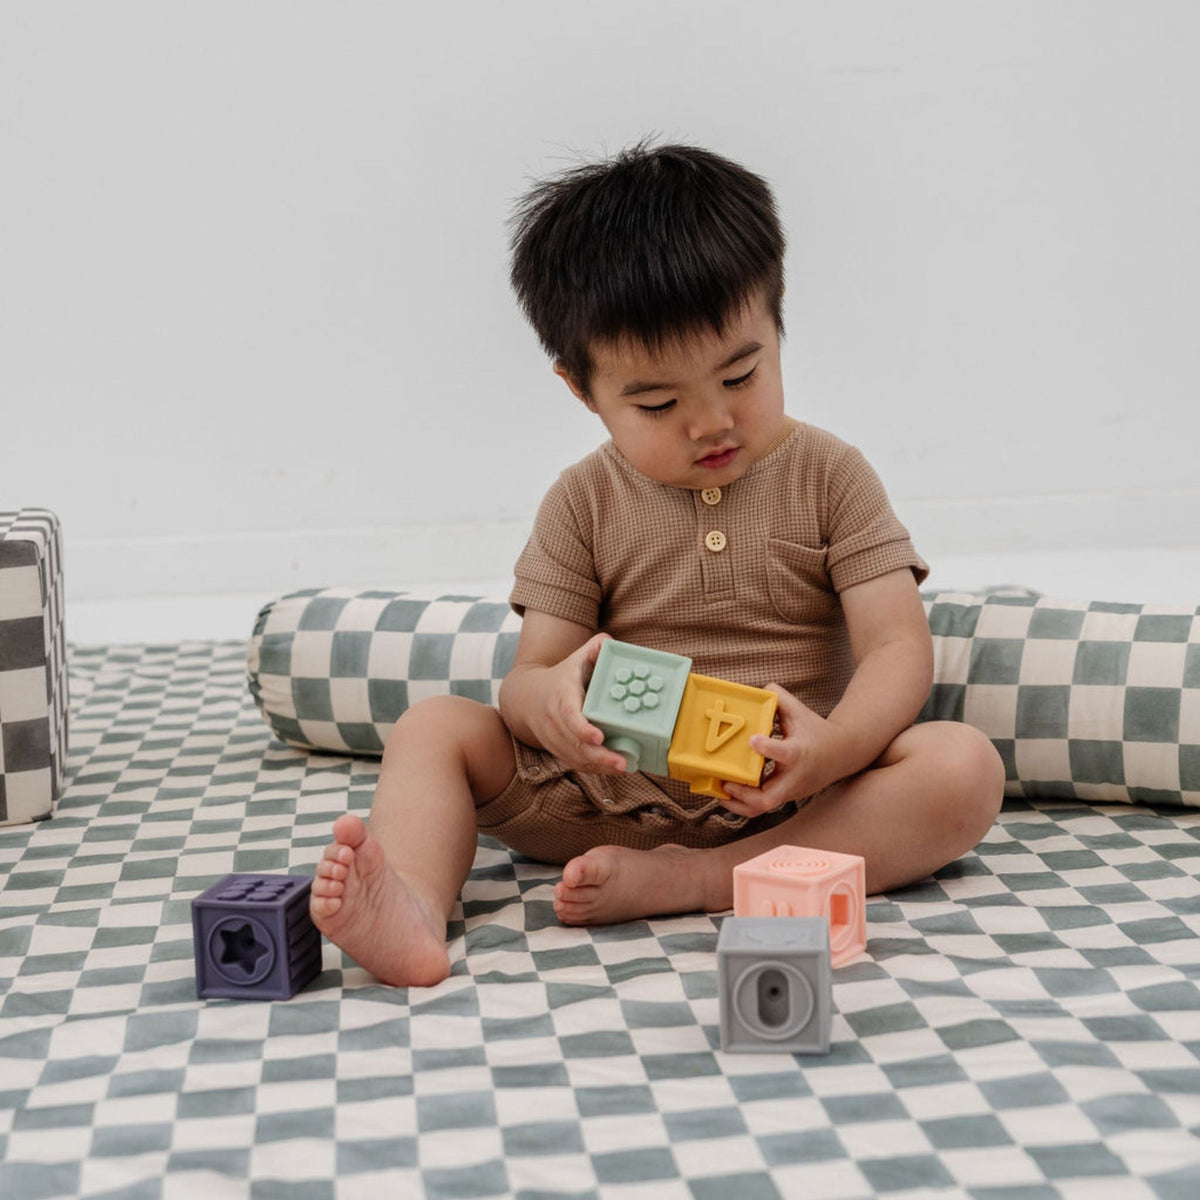 Toki Mats x Project Nursery Checker Support Pillow - Matcha